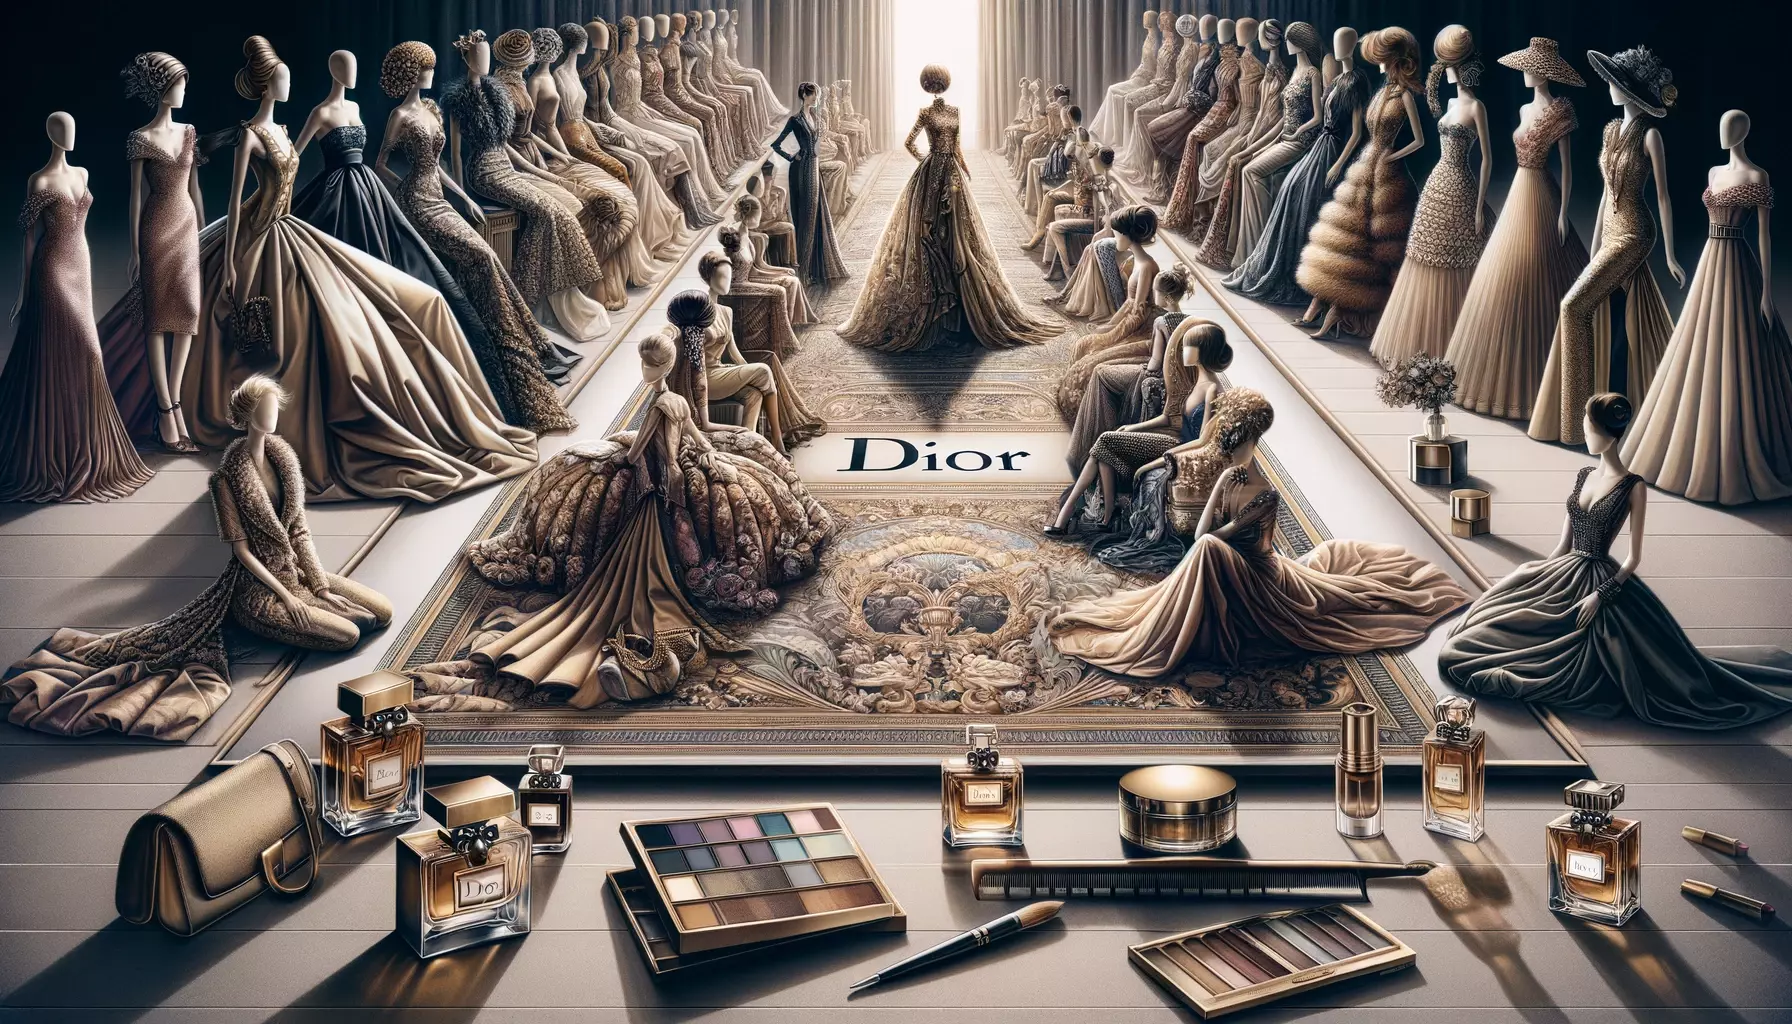 Dior Brand campaigns